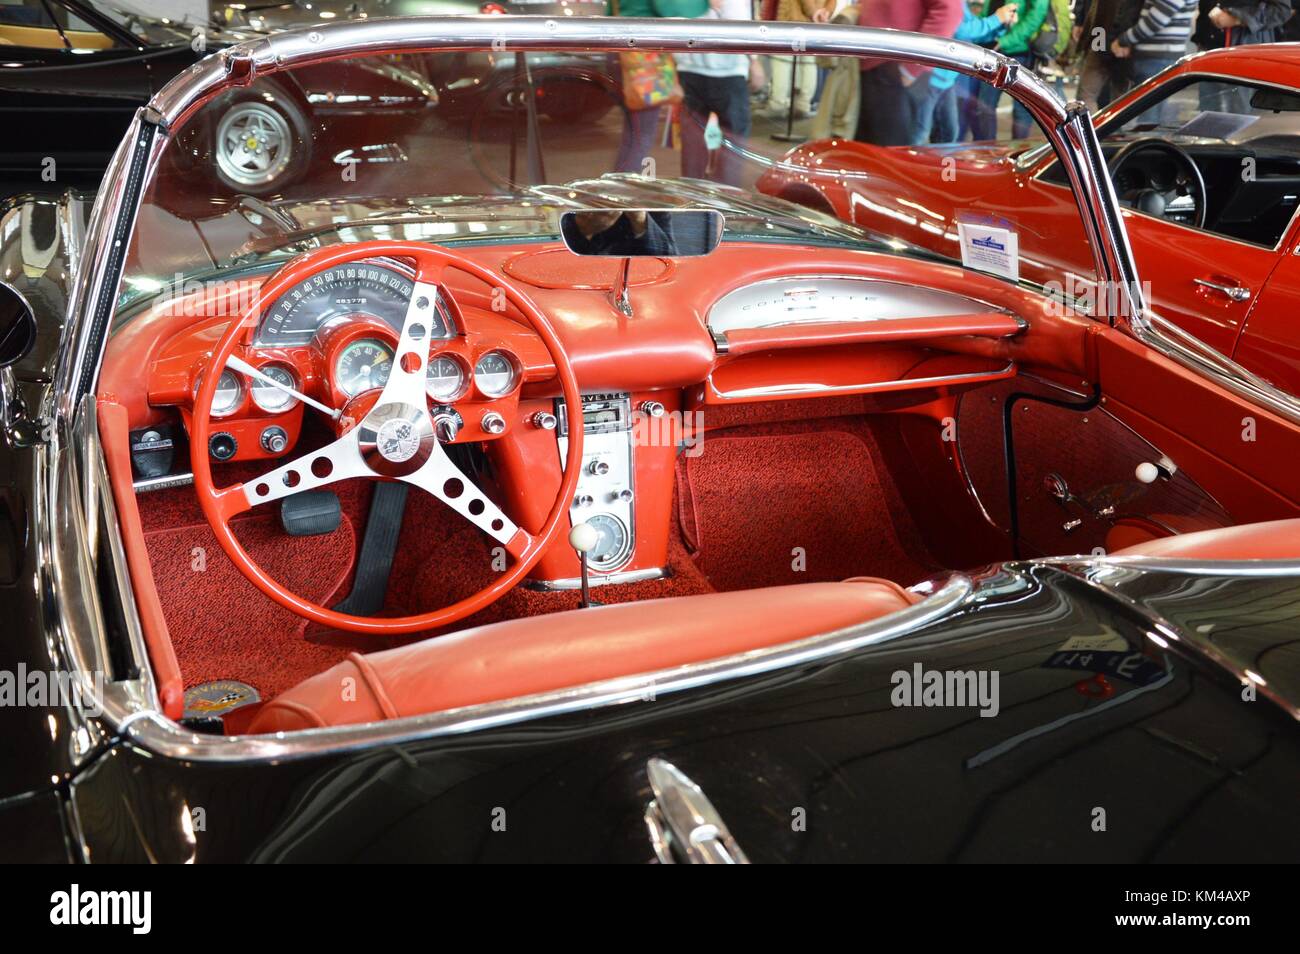 1978 Chevrolet Corvette Vintage car à Padoue, Italie - 25 oct 2015 Banque D'Images